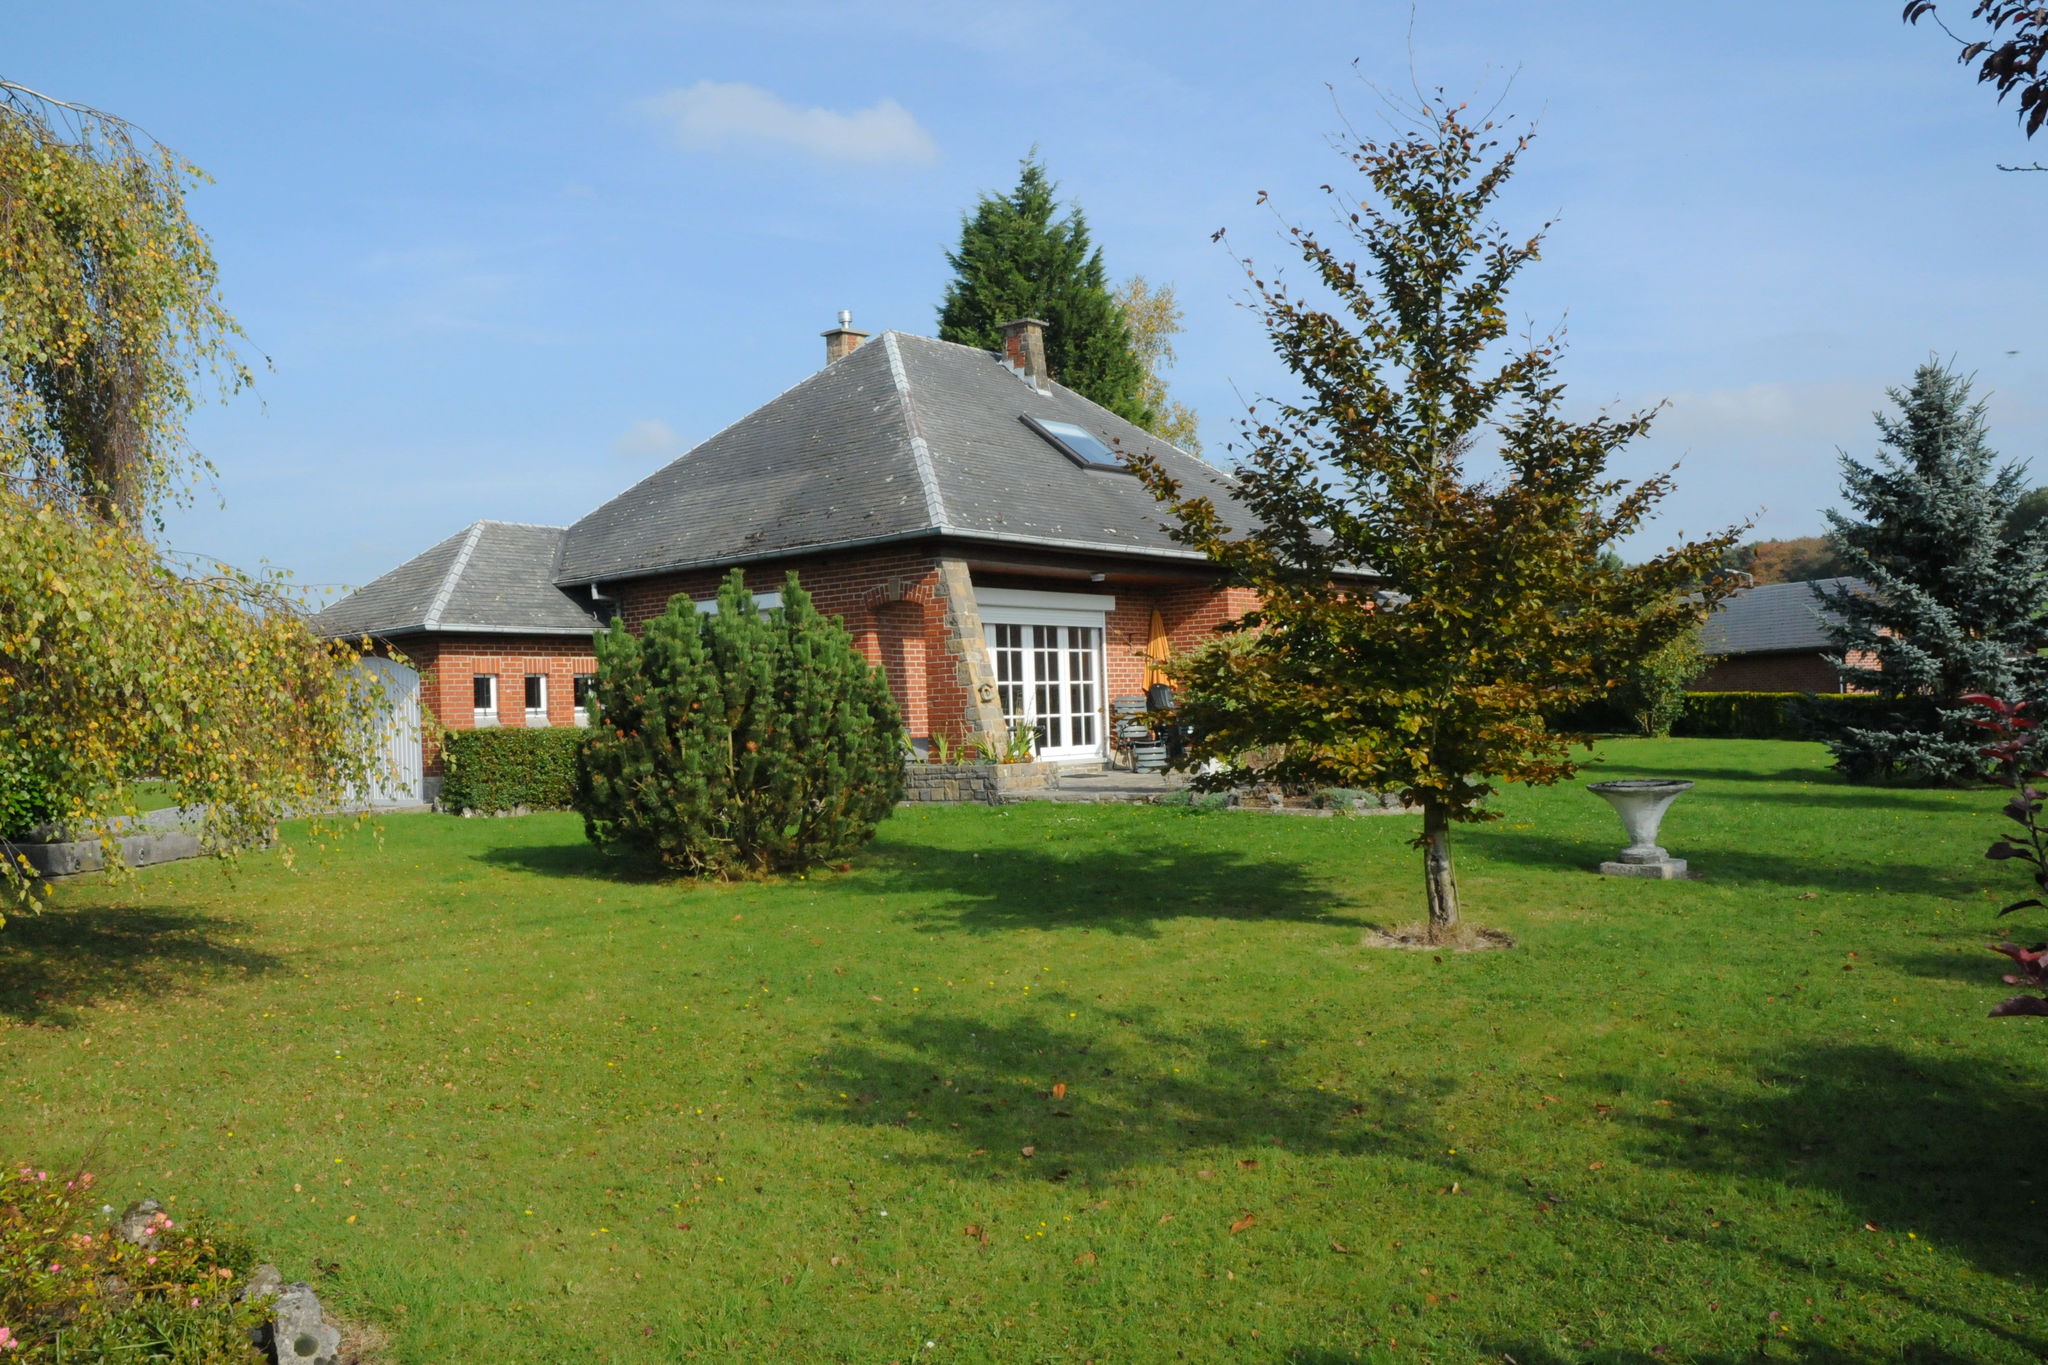 Ruim vakantiehuis in de Ardennen met afgesloten tuin